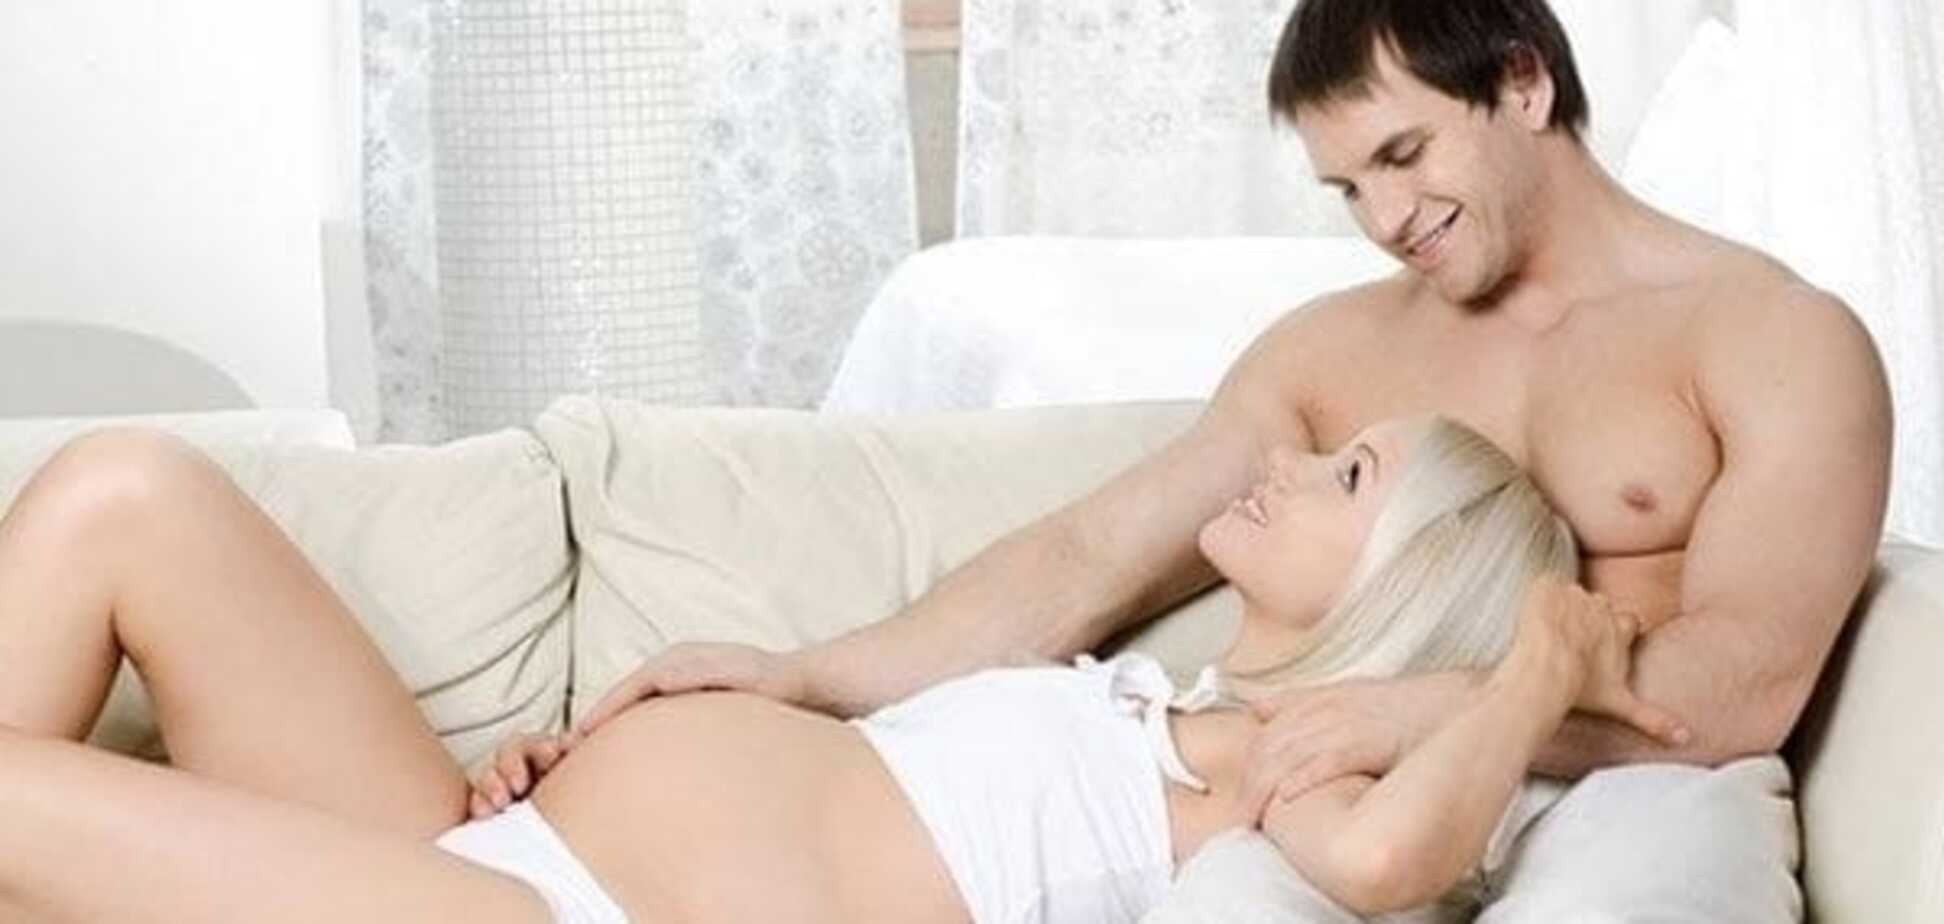 Секс під час вагітності: коли варто утриматися